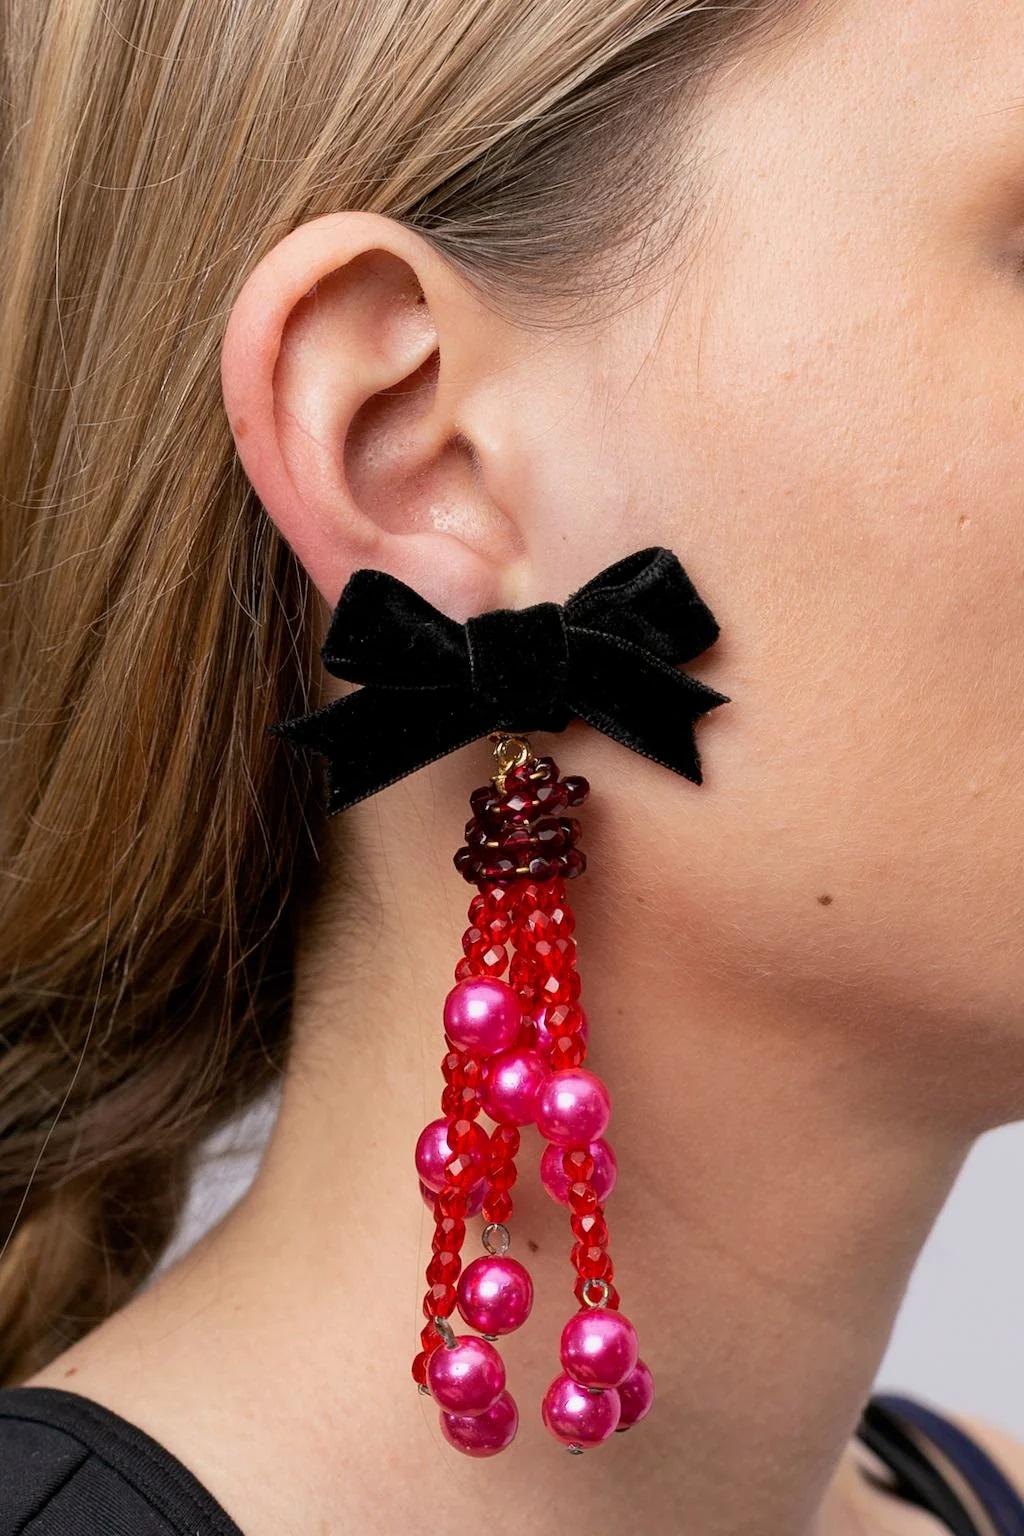 Yves Saint Laurent - (Made in France) Clip-Ohrringe aus Samtband und rosa Perlen.

Zusätzliche Informationen:
Abmessungen: 11 L cm (4.33